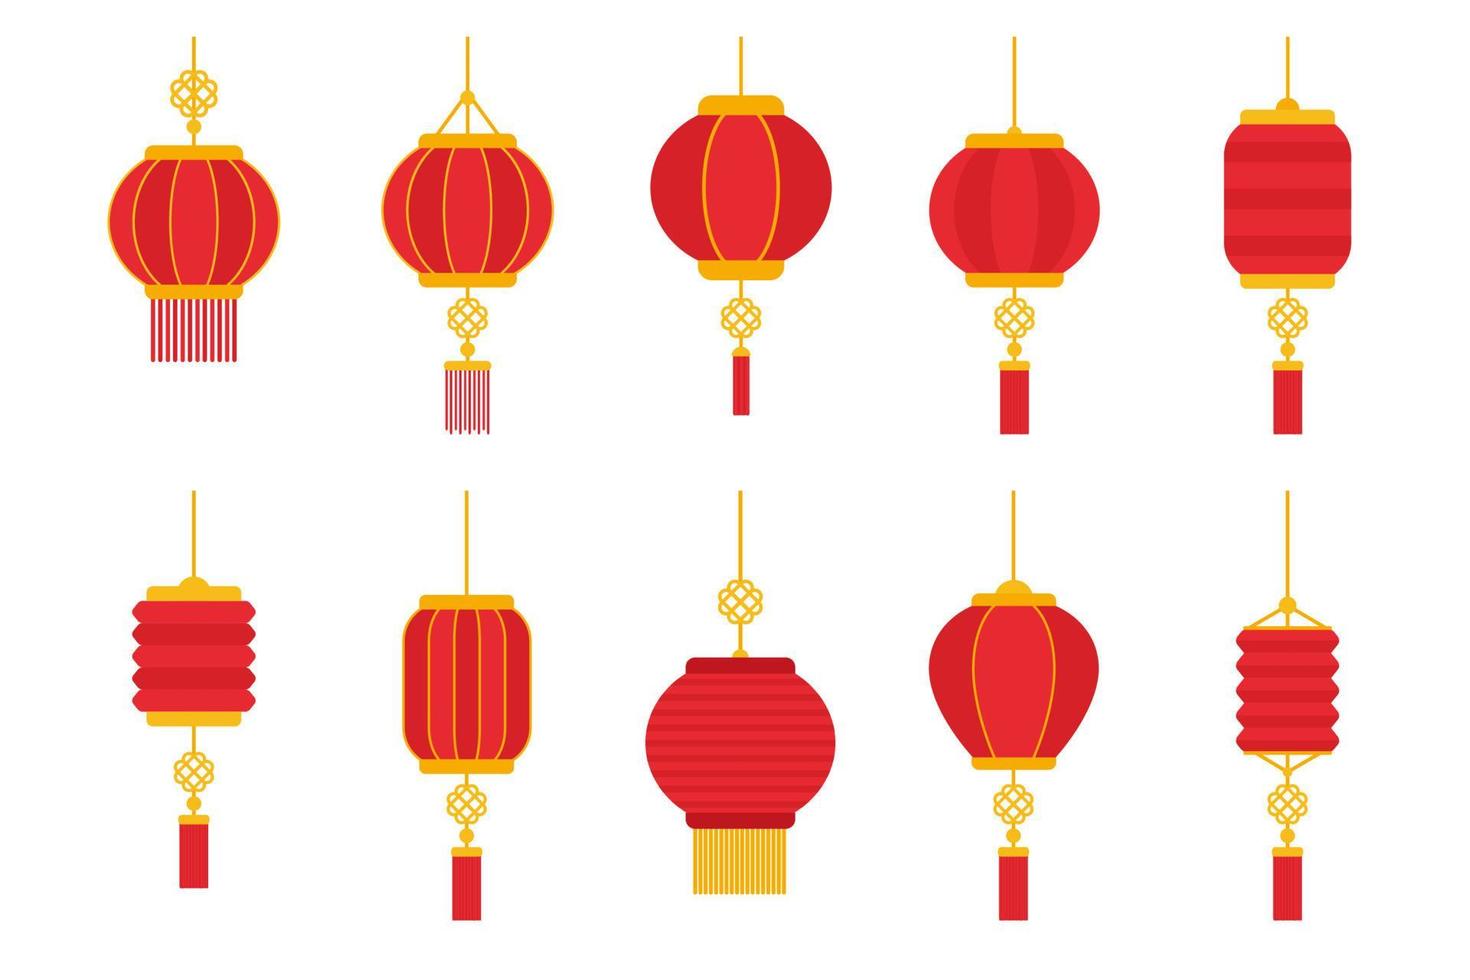 elemento de lanterna chinesa redonda vermelha para decoração do ano novo chinês vetor